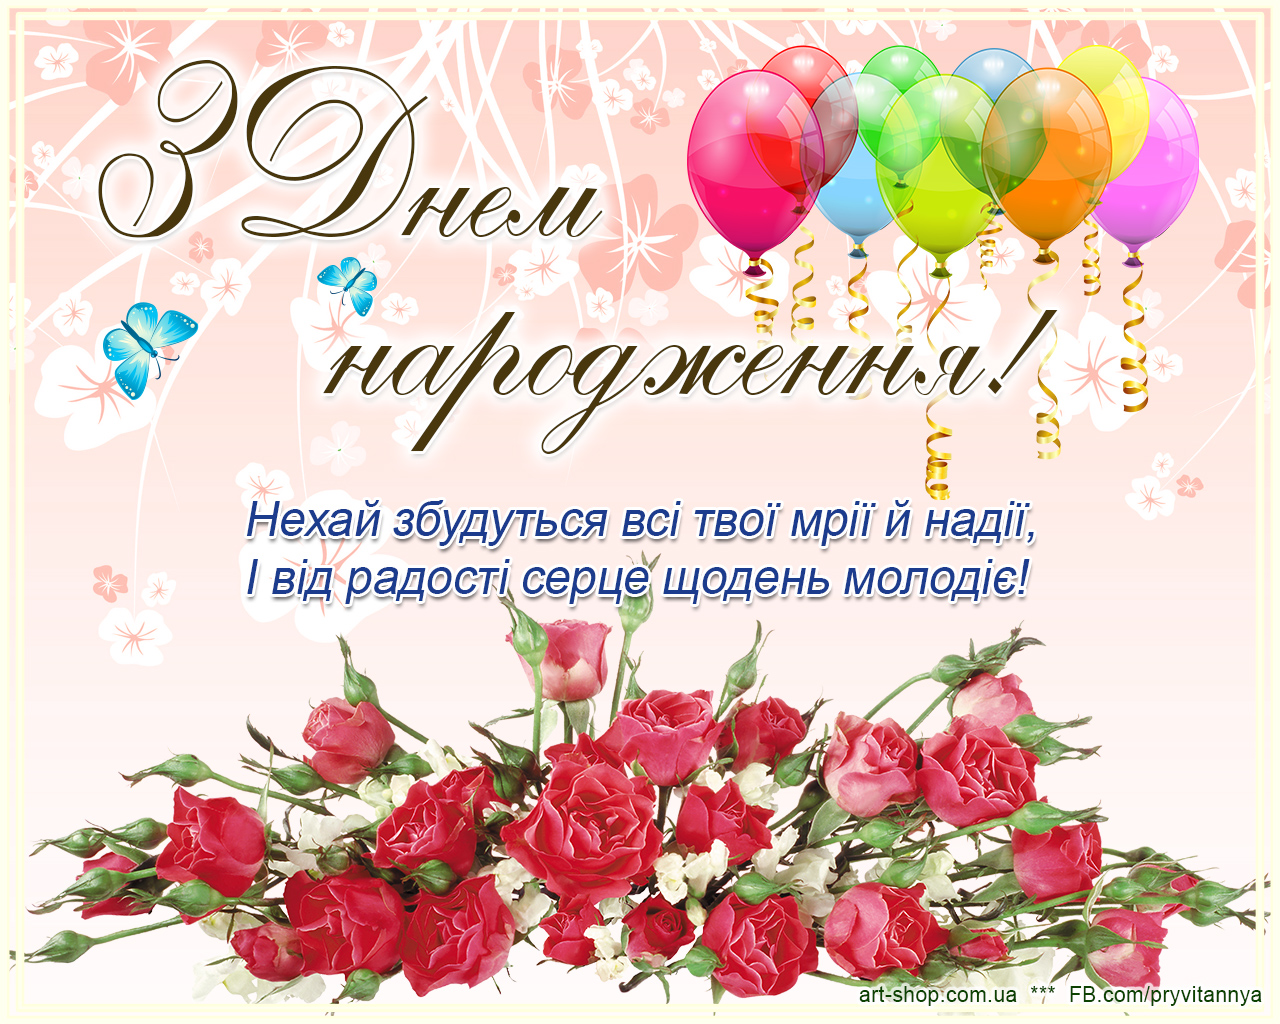 Поздравленя с днём рождения на украинском языке